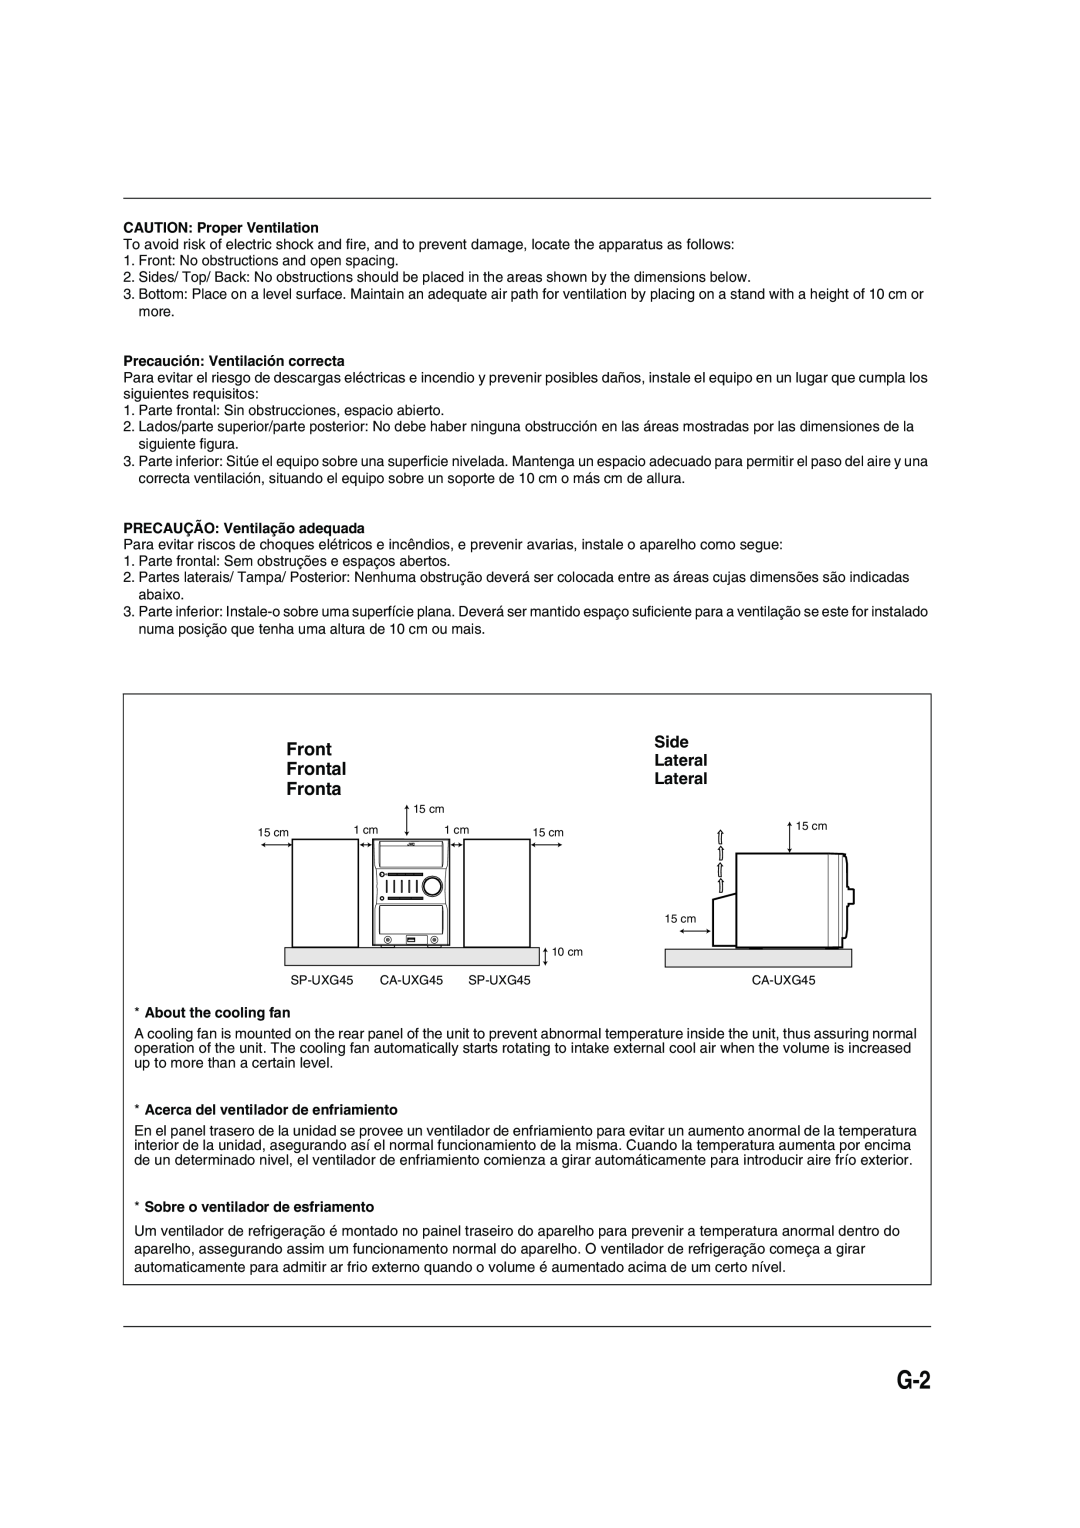 JVC SP-UXG45 Frontal, Side, CAUTION Proper Ventilation, Precaución Ventilación correcta, PRECAUÇÃO Ventilação adequada 